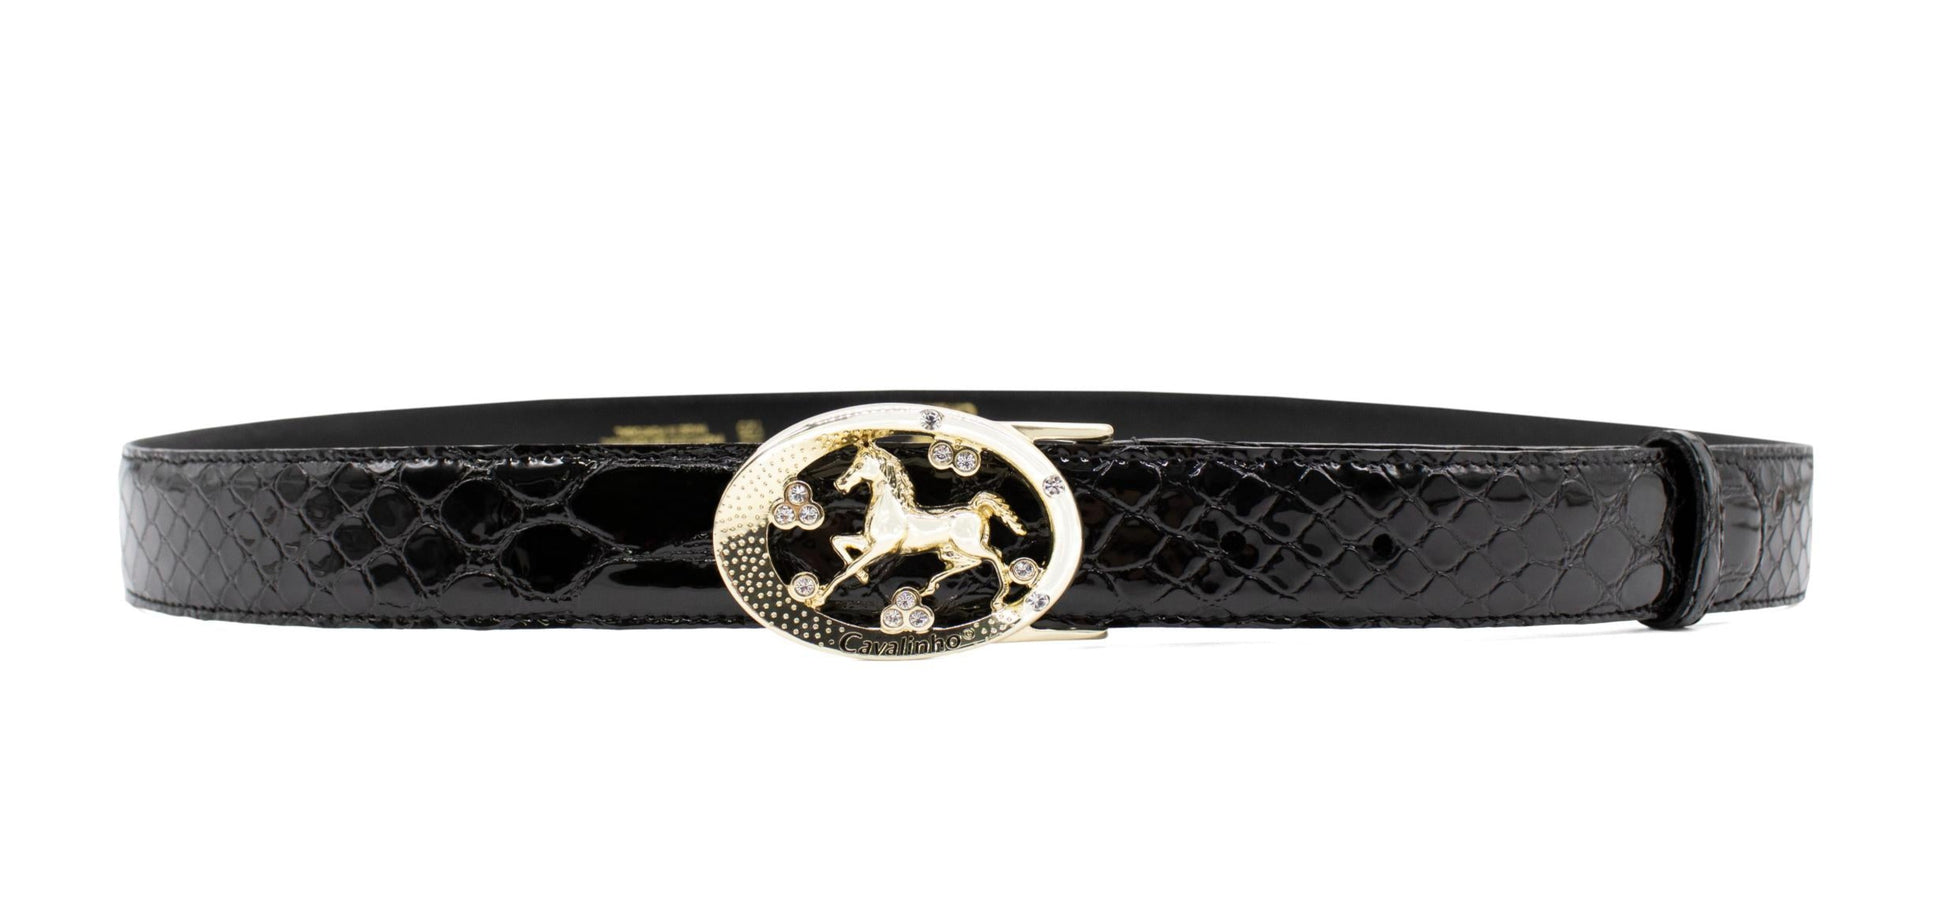 Cavalinho Oval Horse Leather Belt - Black Gold - 58010817.01_1